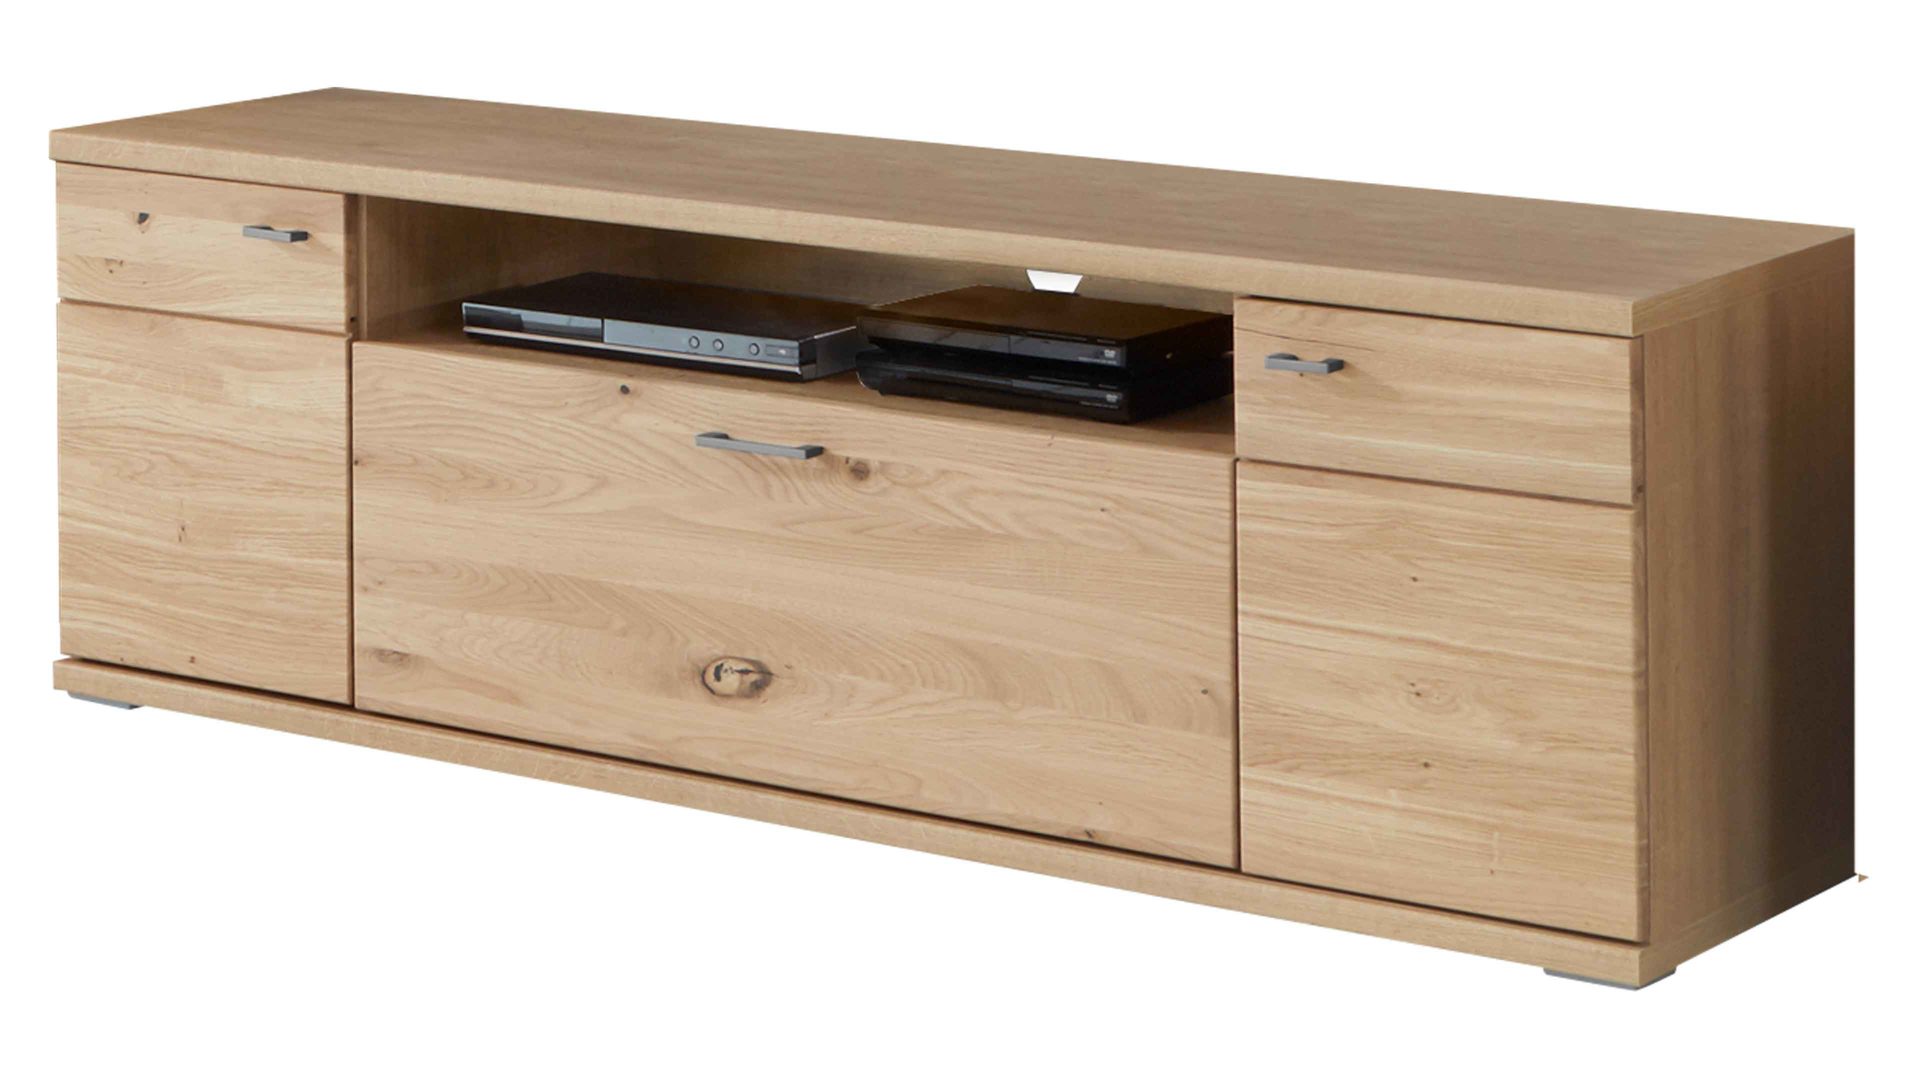 Lowboard Ideal möbel aus Holz in Holzfarben Medien-Lowboard Alteiche  – Breite ca. 160 cm